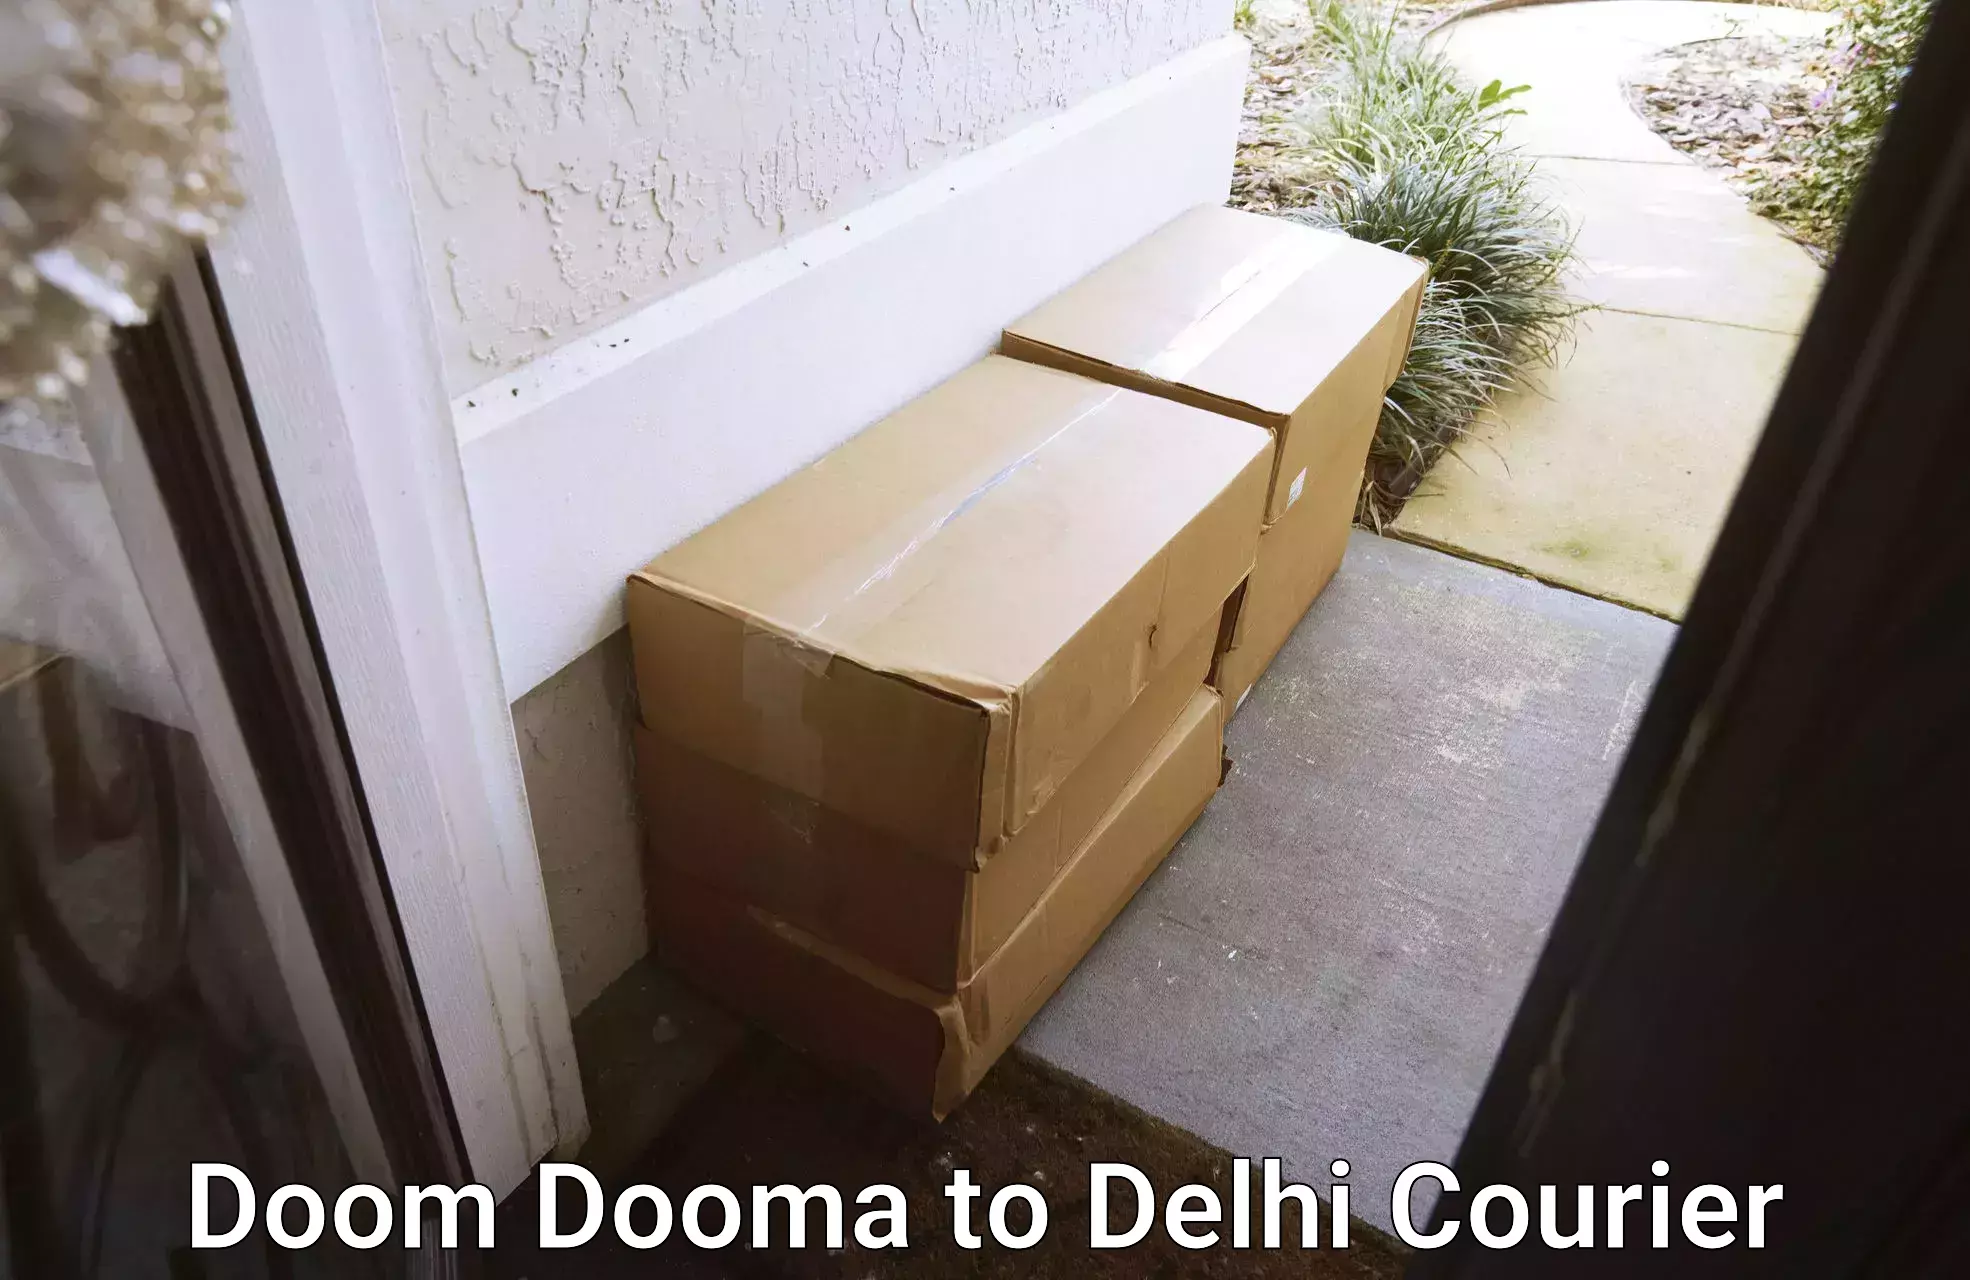 24/7 shipping services Doom Dooma to University of Delhi